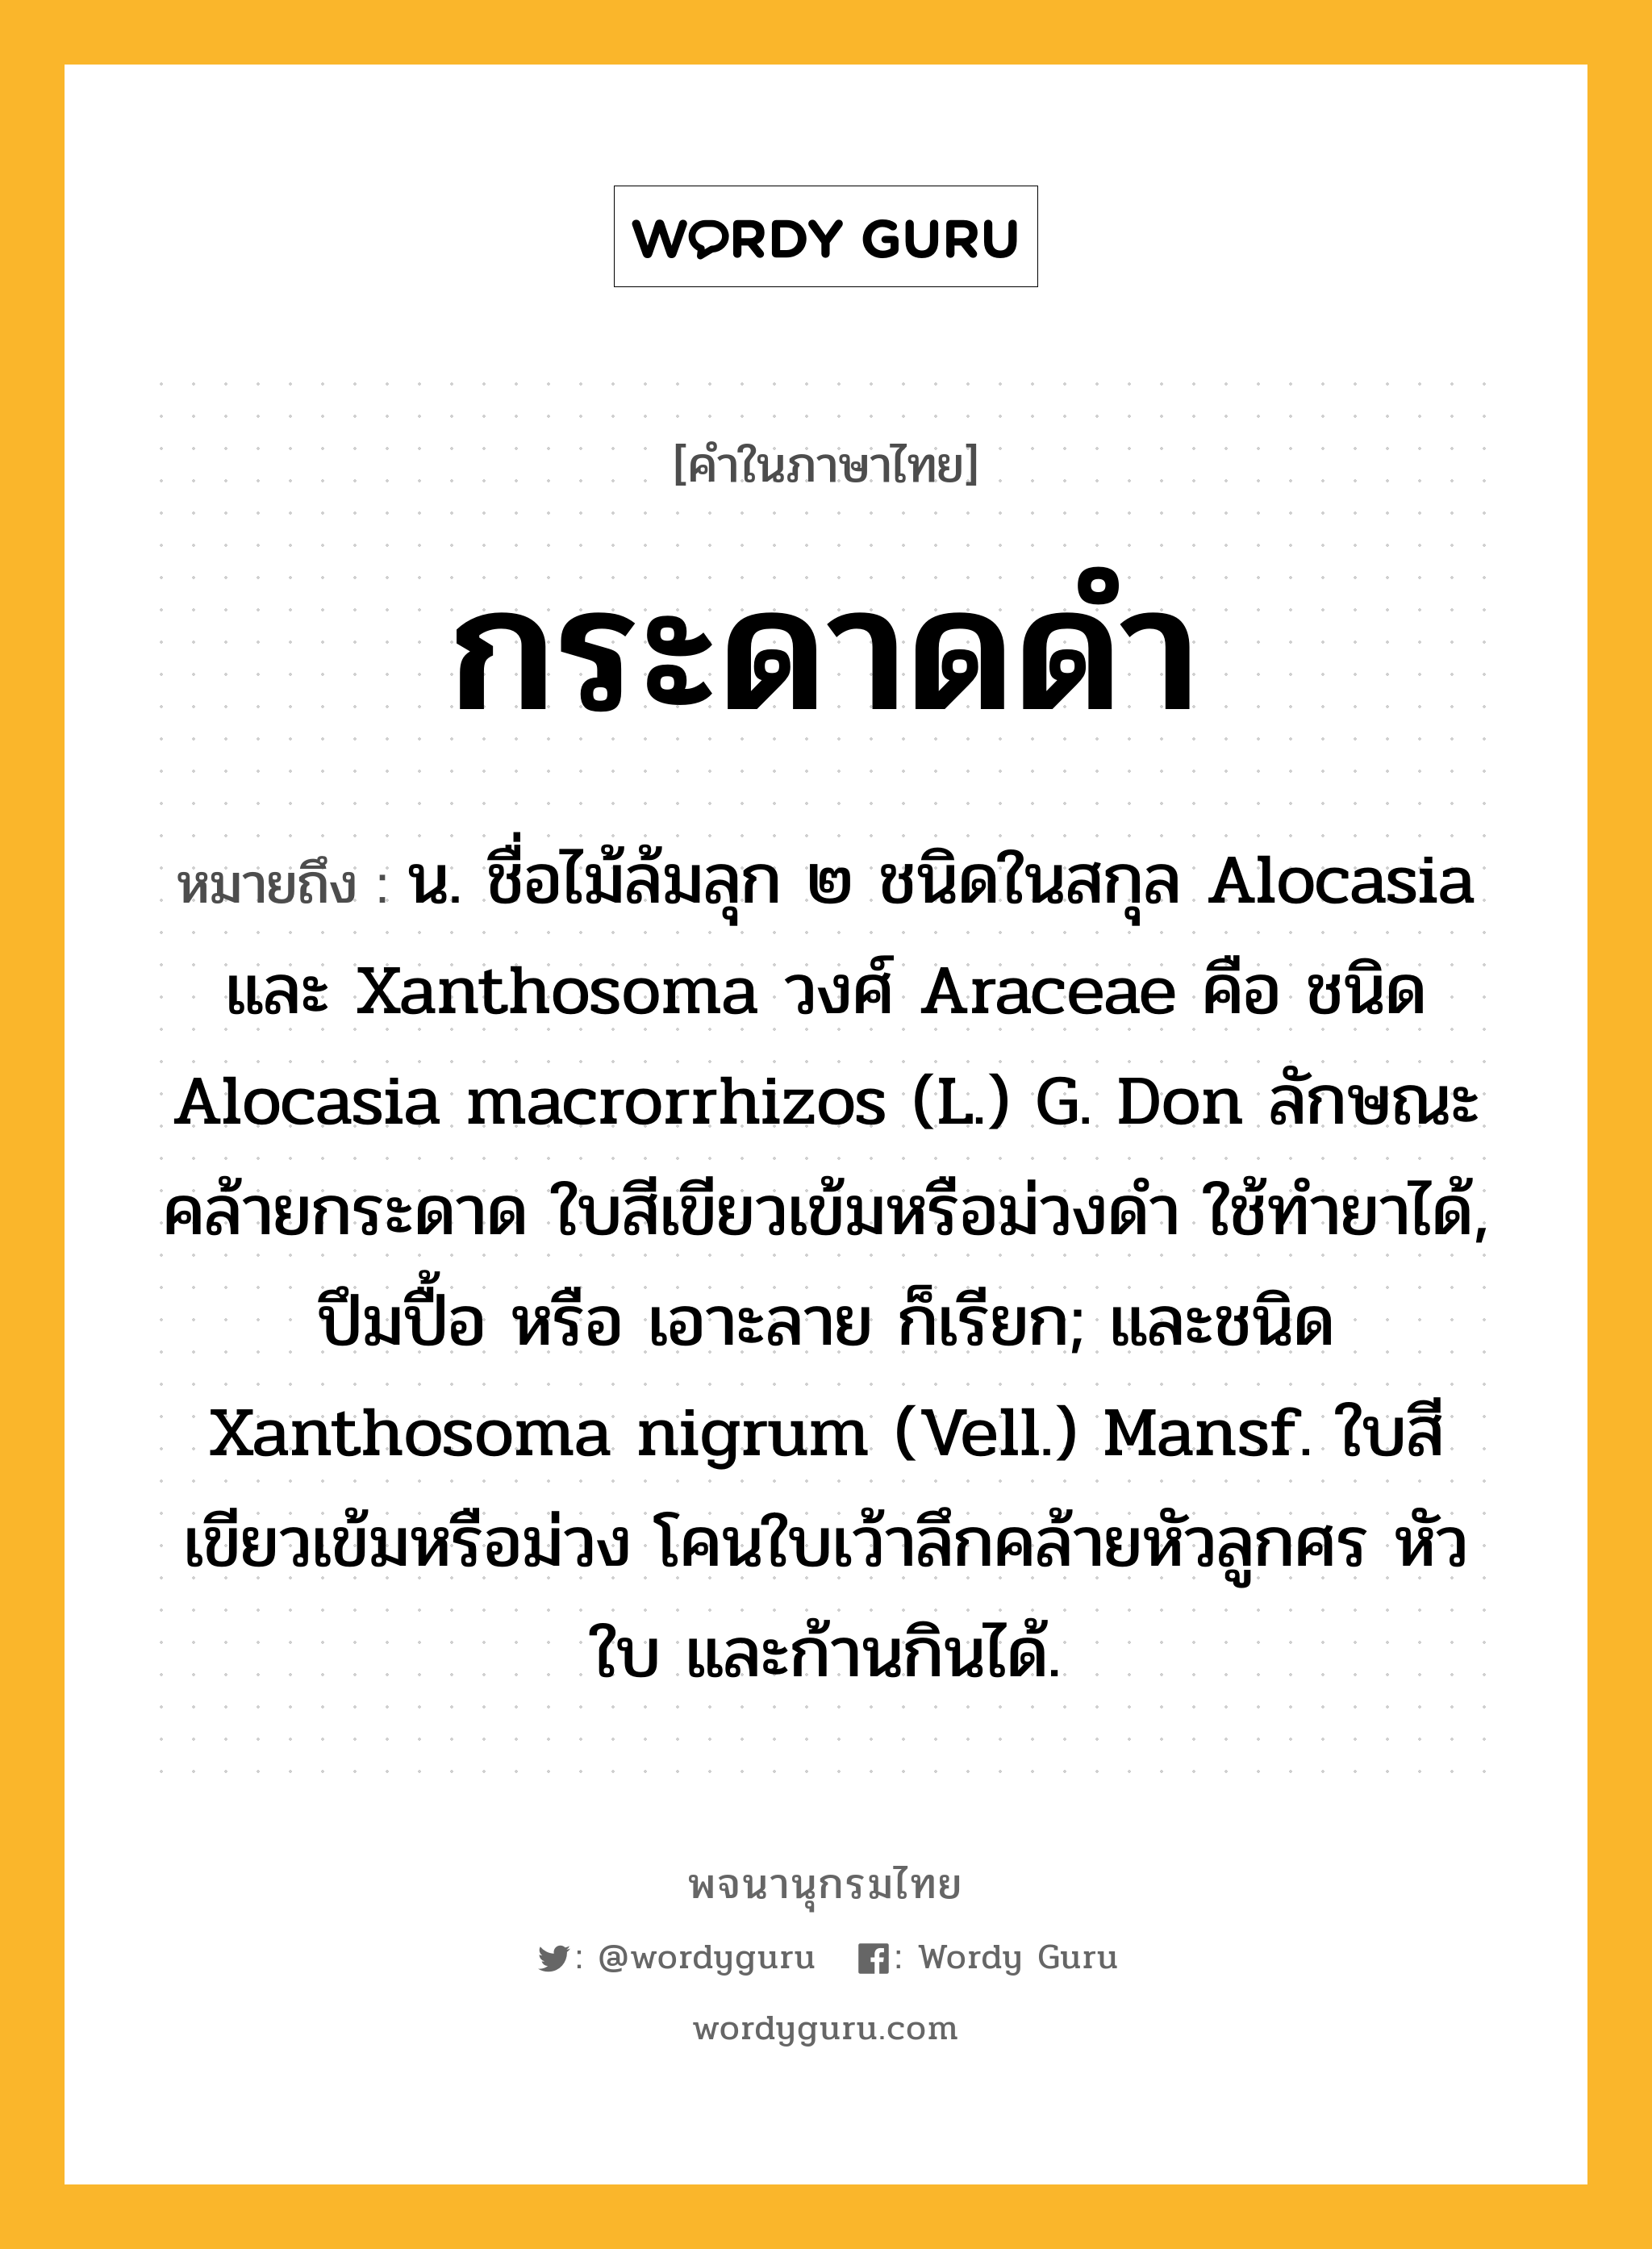 กระดาดดำ ความหมาย หมายถึงอะไร?, คำในภาษาไทย กระดาดดำ หมายถึง น. ชื่อไม้ล้มลุก ๒ ชนิดในสกุล Alocasia และ Xanthosoma วงศ์ Araceae คือ ชนิด Alocasia macrorrhizos (L.) G. Don ลักษณะคล้ายกระดาด ใบสีเขียวเข้มหรือม่วงดำ ใช้ทํายาได้, ปึมปื้อ หรือ เอาะลาย ก็เรียก; และชนิด Xanthosoma nigrum (Vell.) Mansf. ใบสีเขียวเข้มหรือม่วง โคนใบเว้าลึกคล้ายหัวลูกศร หัว ใบ และก้านกินได้.